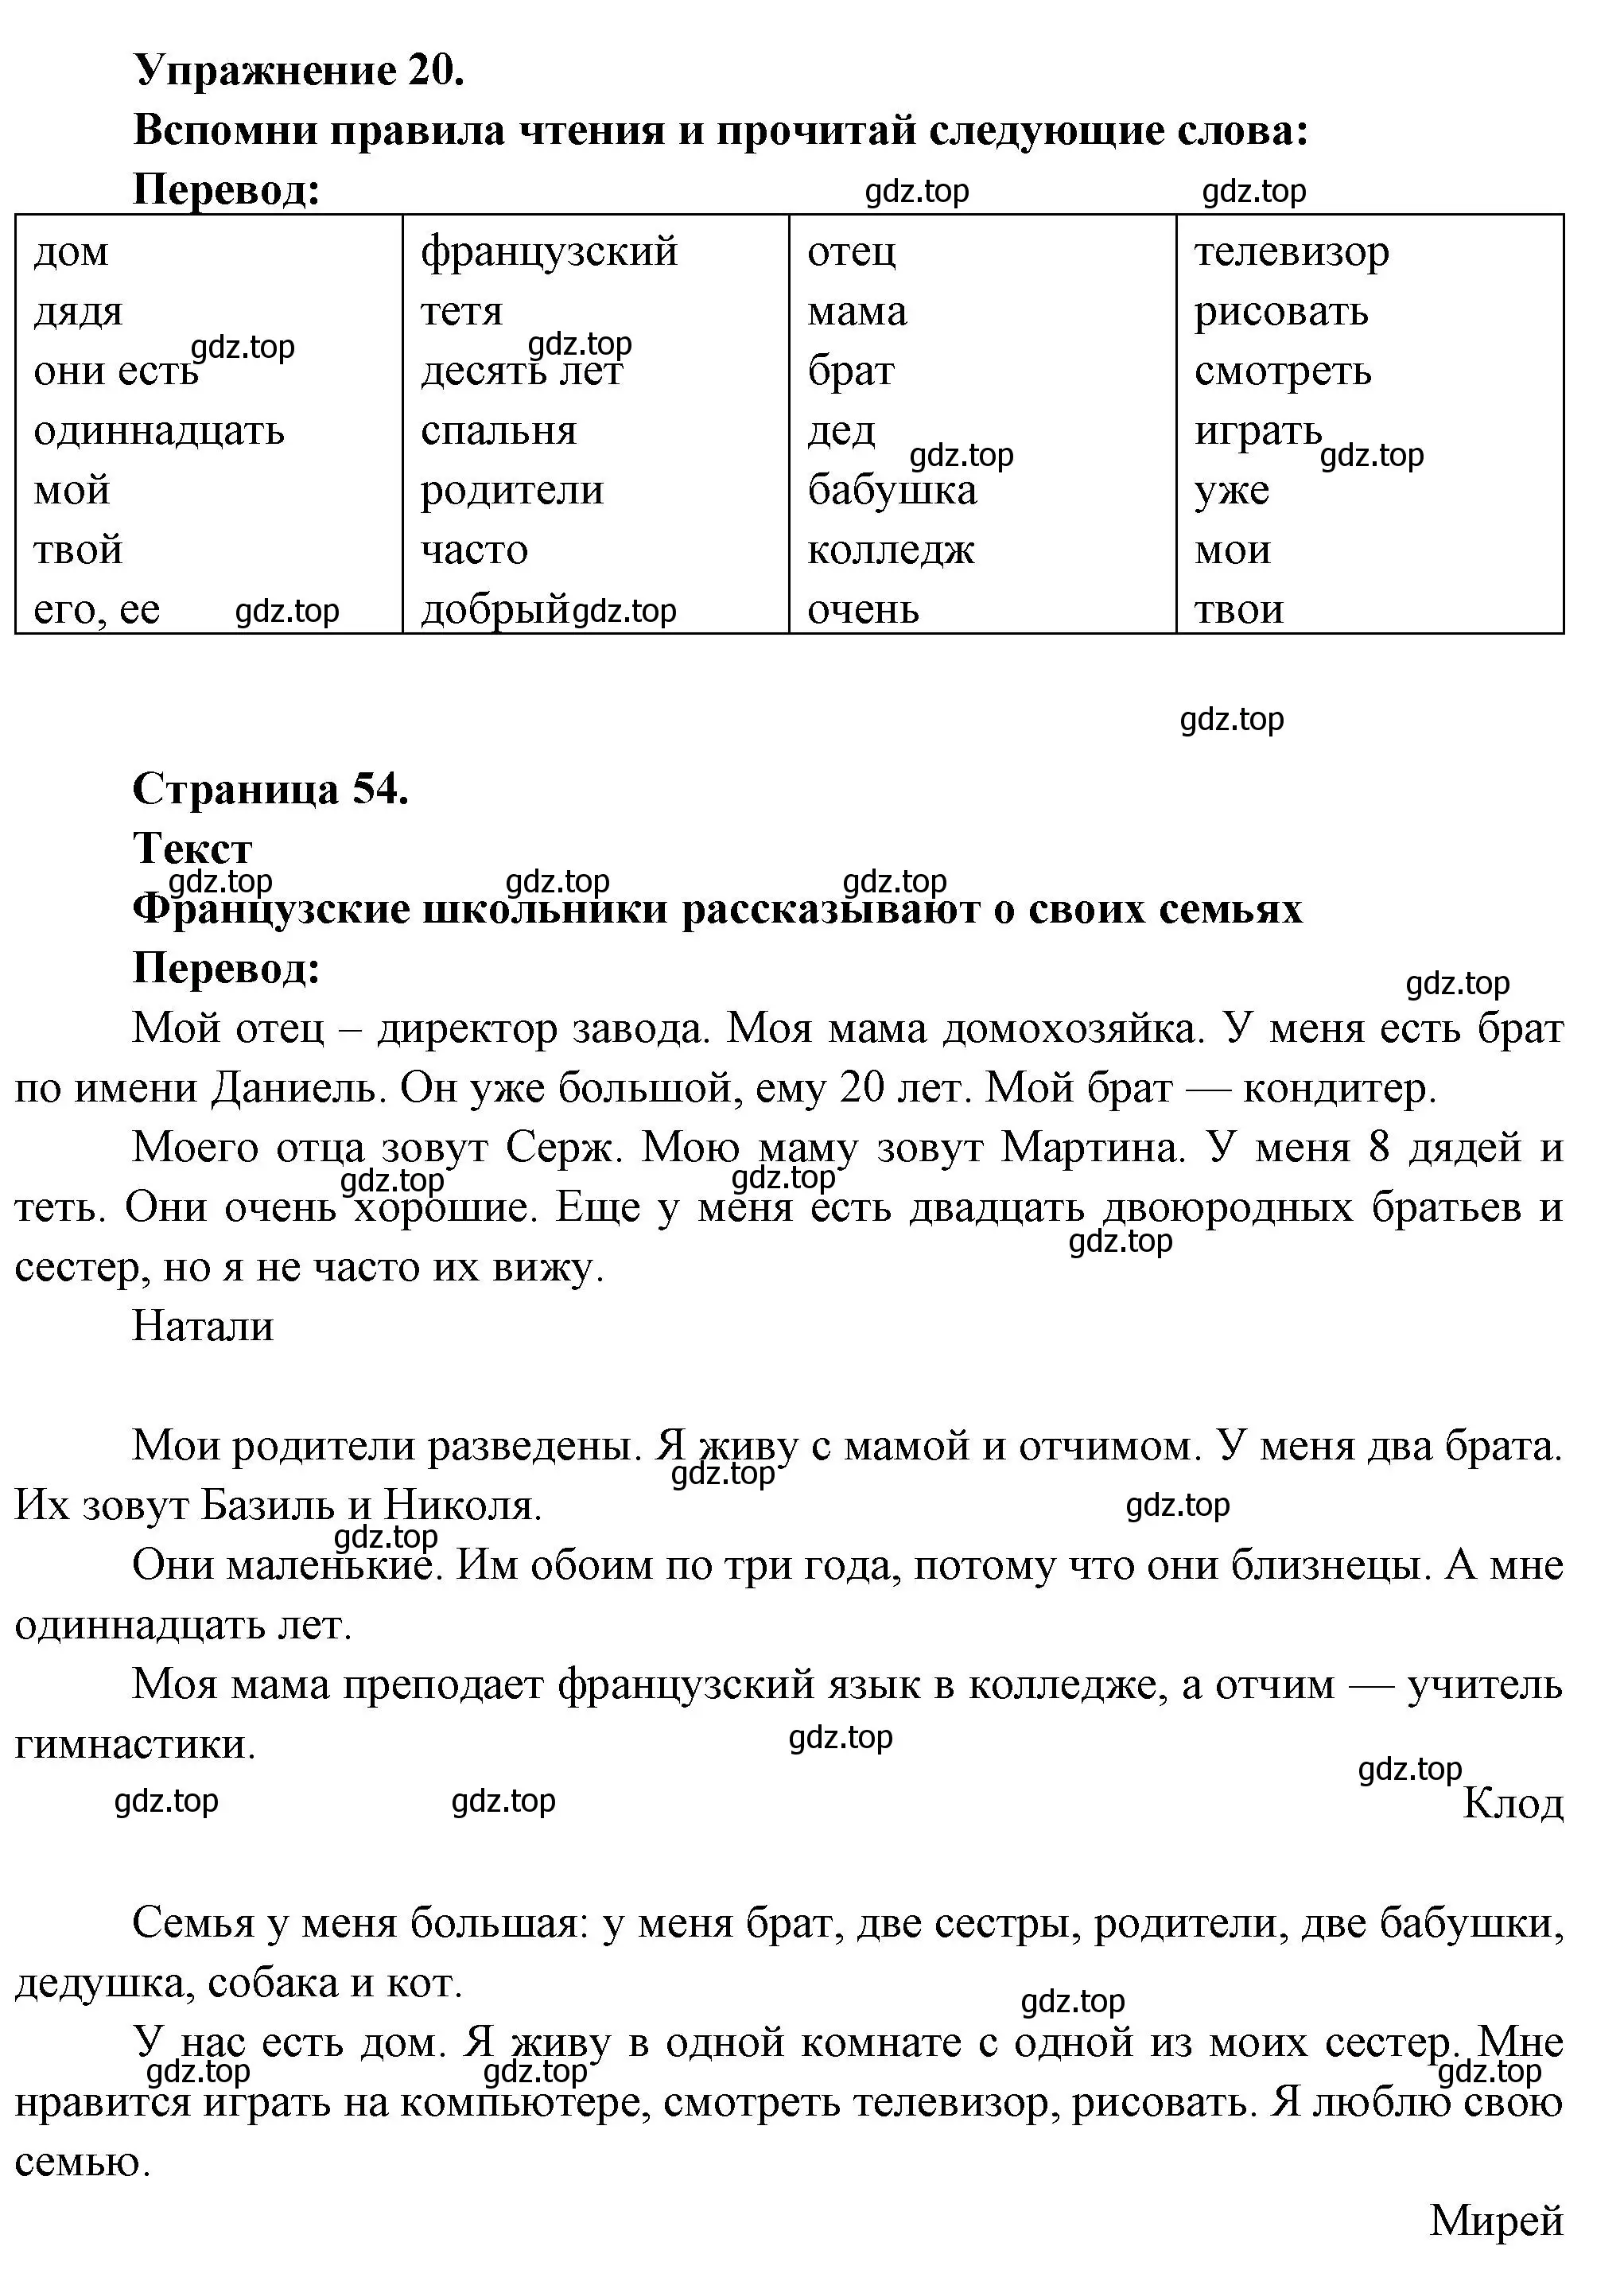 Решение номер 20 (страница 53) гдз по французскому языку 5 класс Береговская, Белосельская, учебник 1 часть